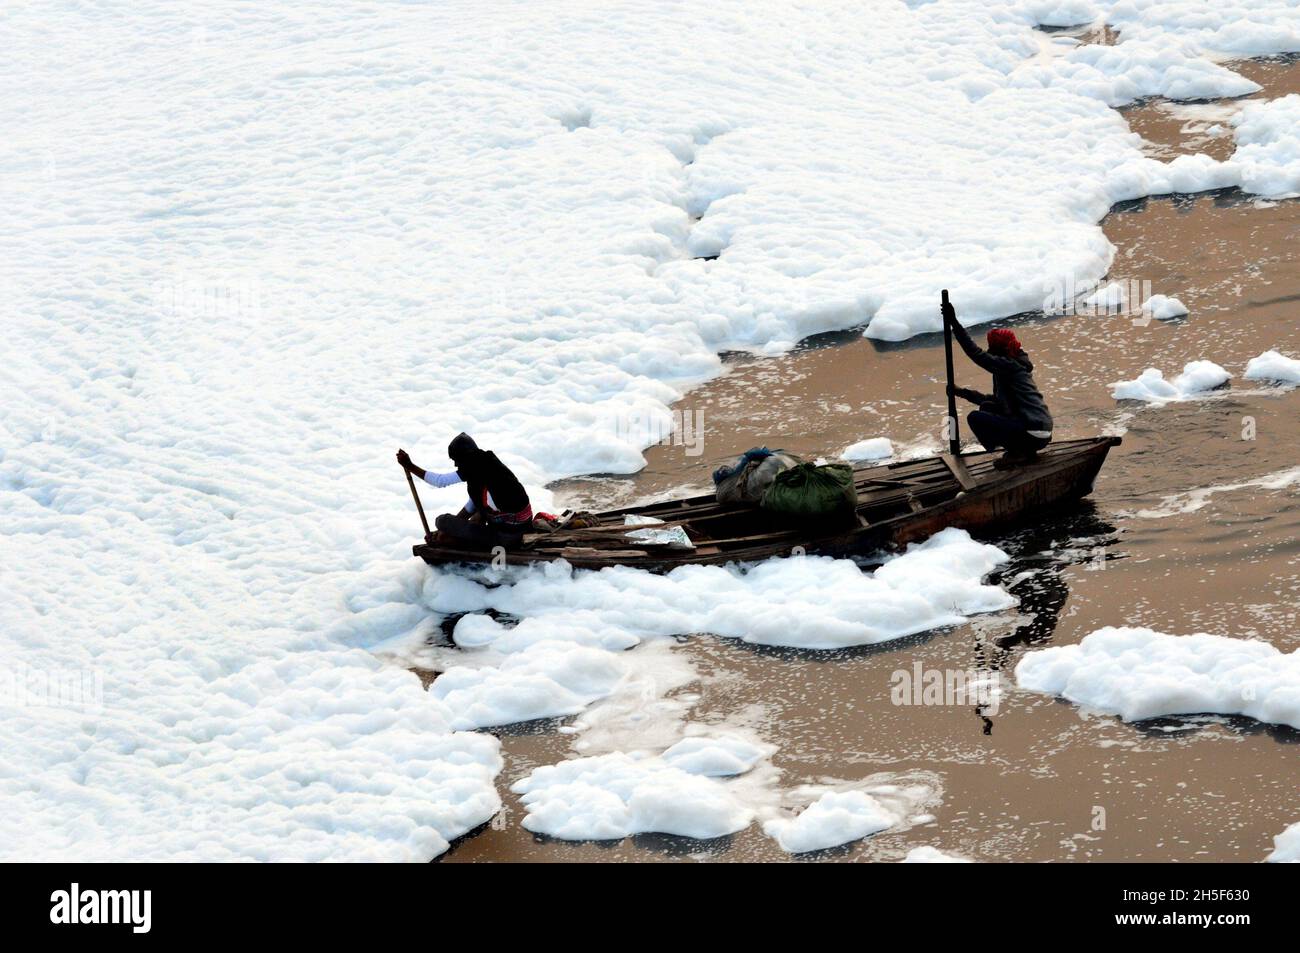 Non exclusif: NEW DELHI, INDE - 9 NOVEMBRE 2021: Un pêcheur voyage dans un bateau, essayant de traverser une épaisse couche de mousse toxique qui flotte dessus Banque D'Images